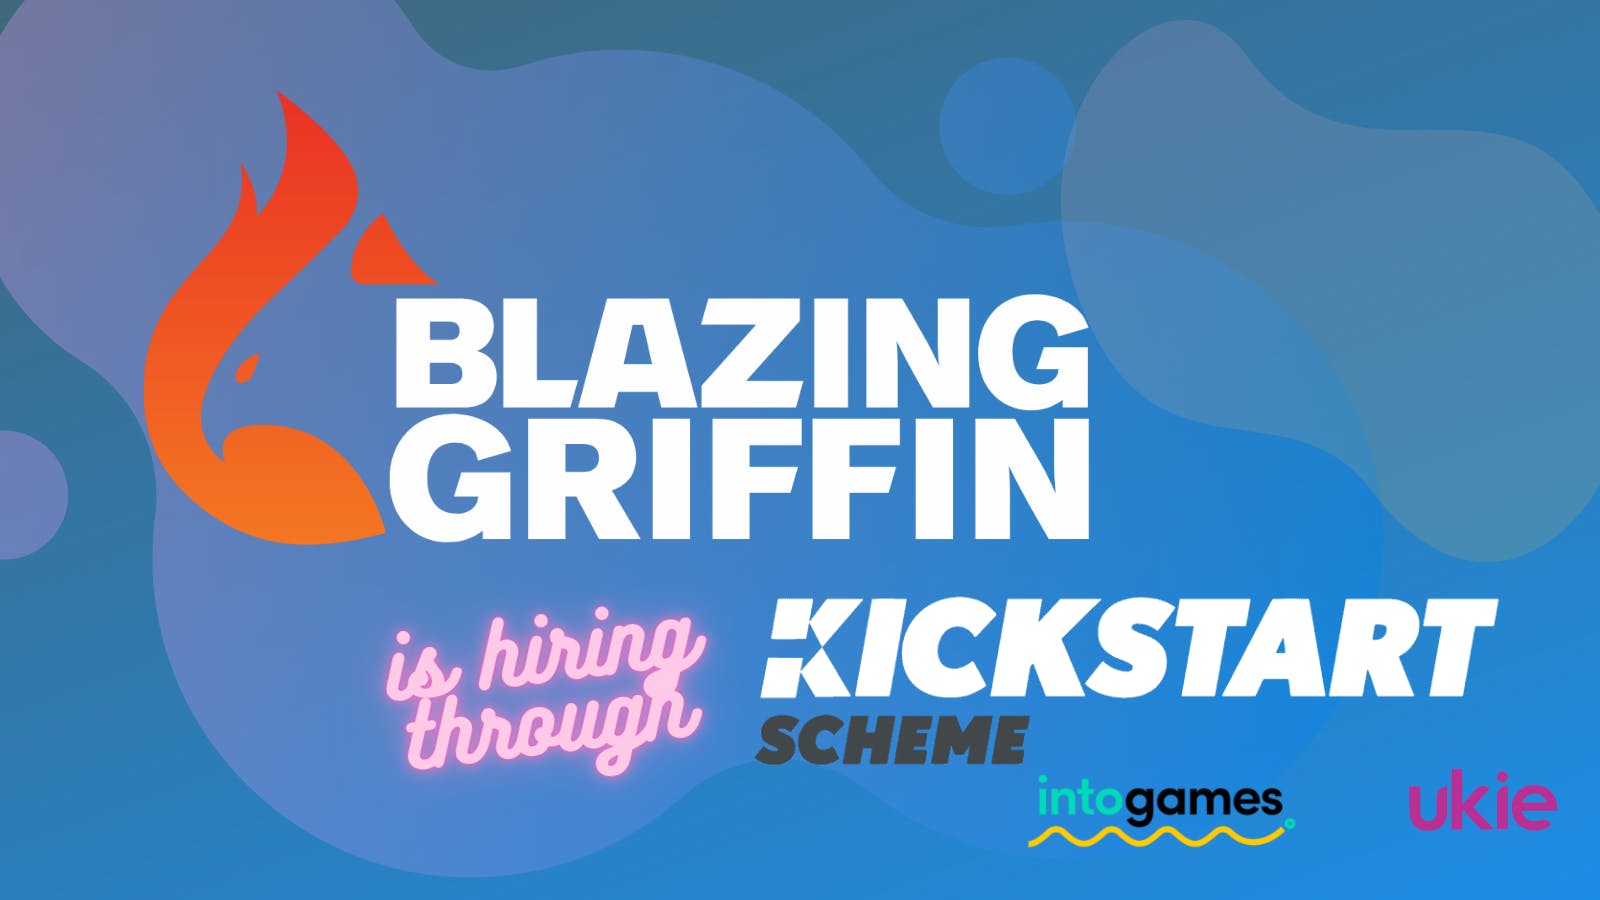 Blazing Griffin - We're Hiring Through the Kickstart Scheme